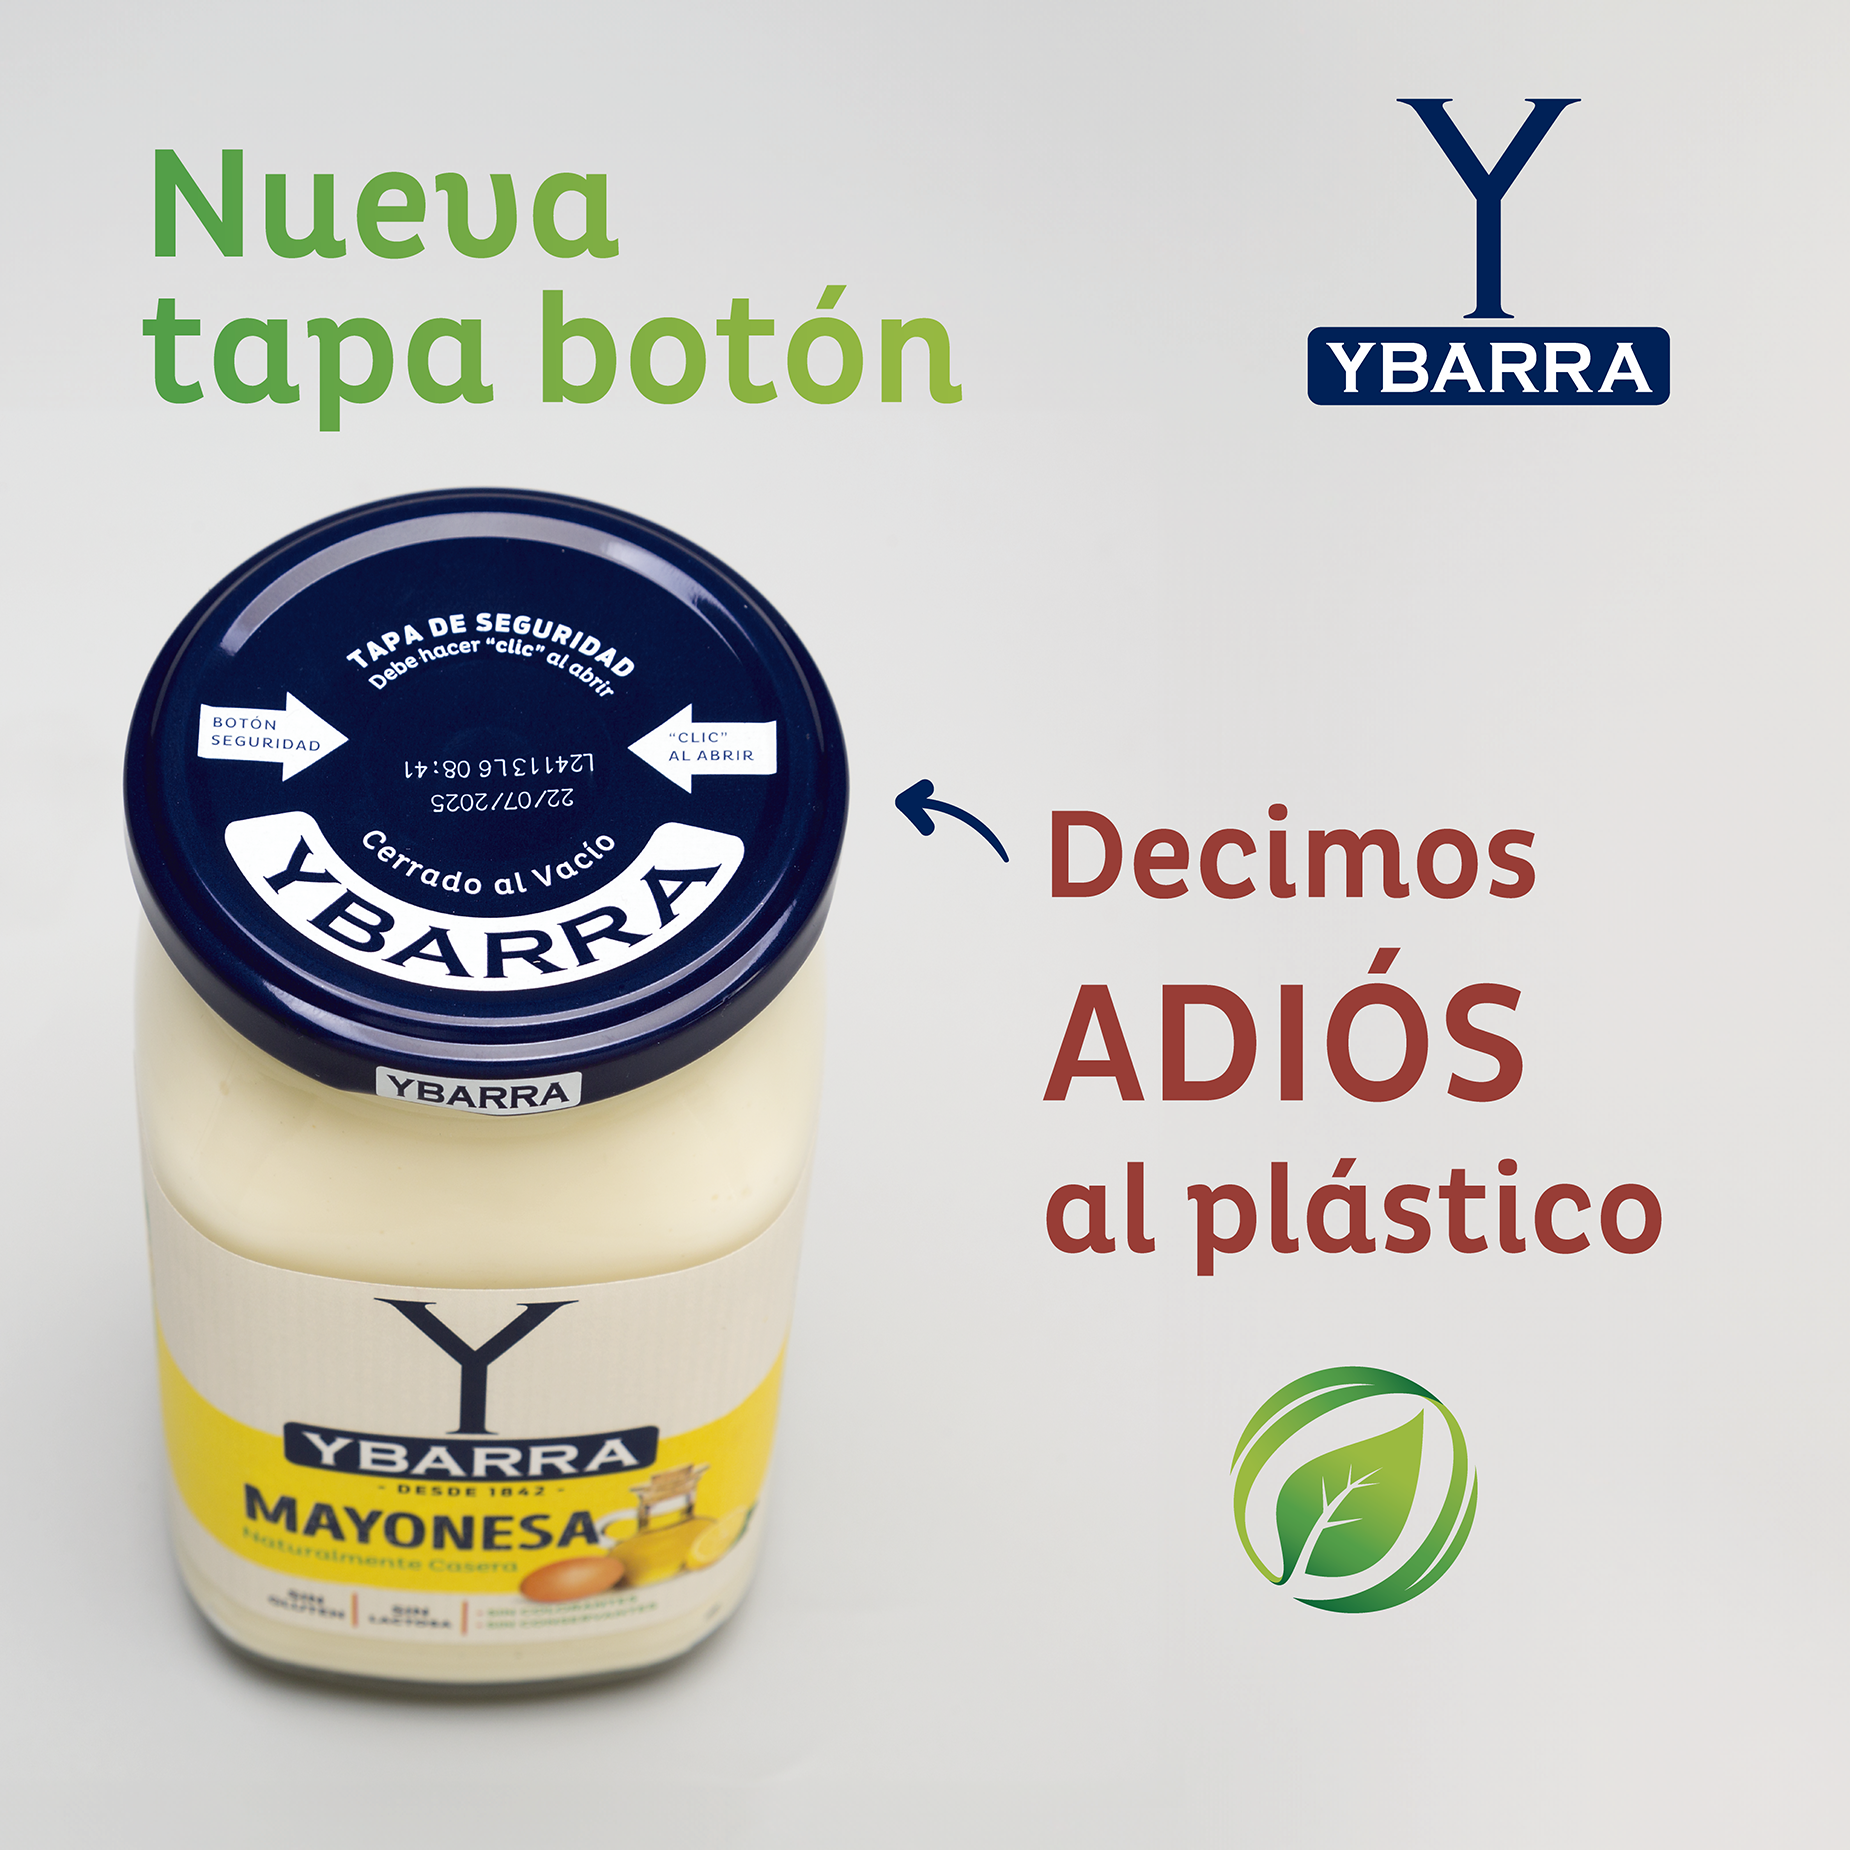 Ybarra continúa avanzando en materia de sostenibilidad